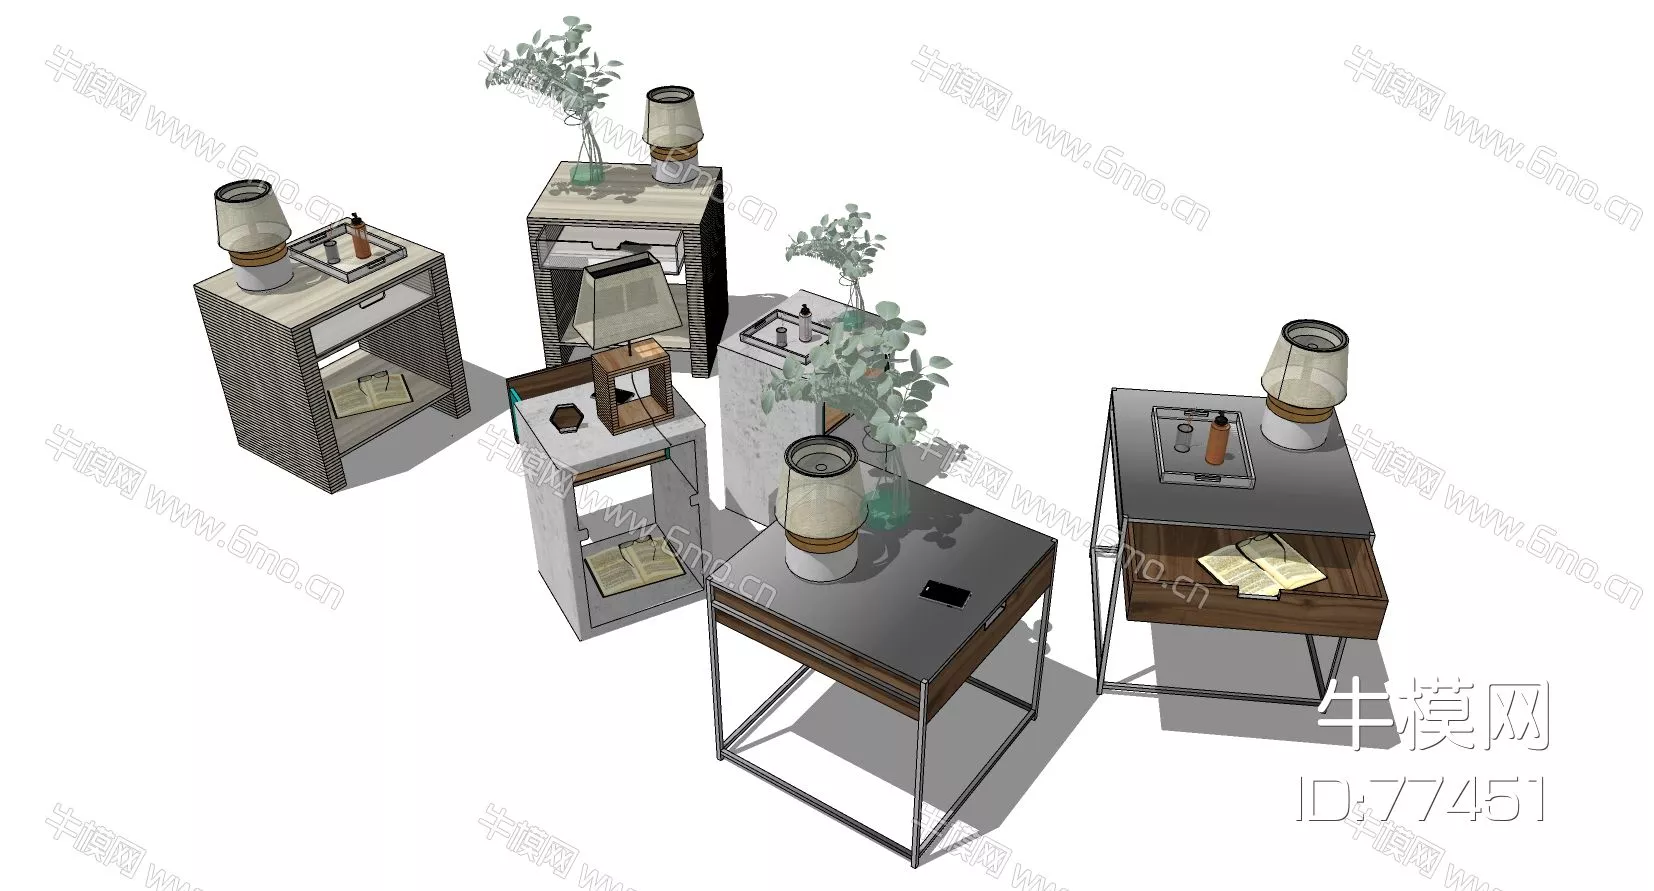 NORDIC SIDE TABLE - SKETCHUP 3D MODEL - ENSCAPE - 77451